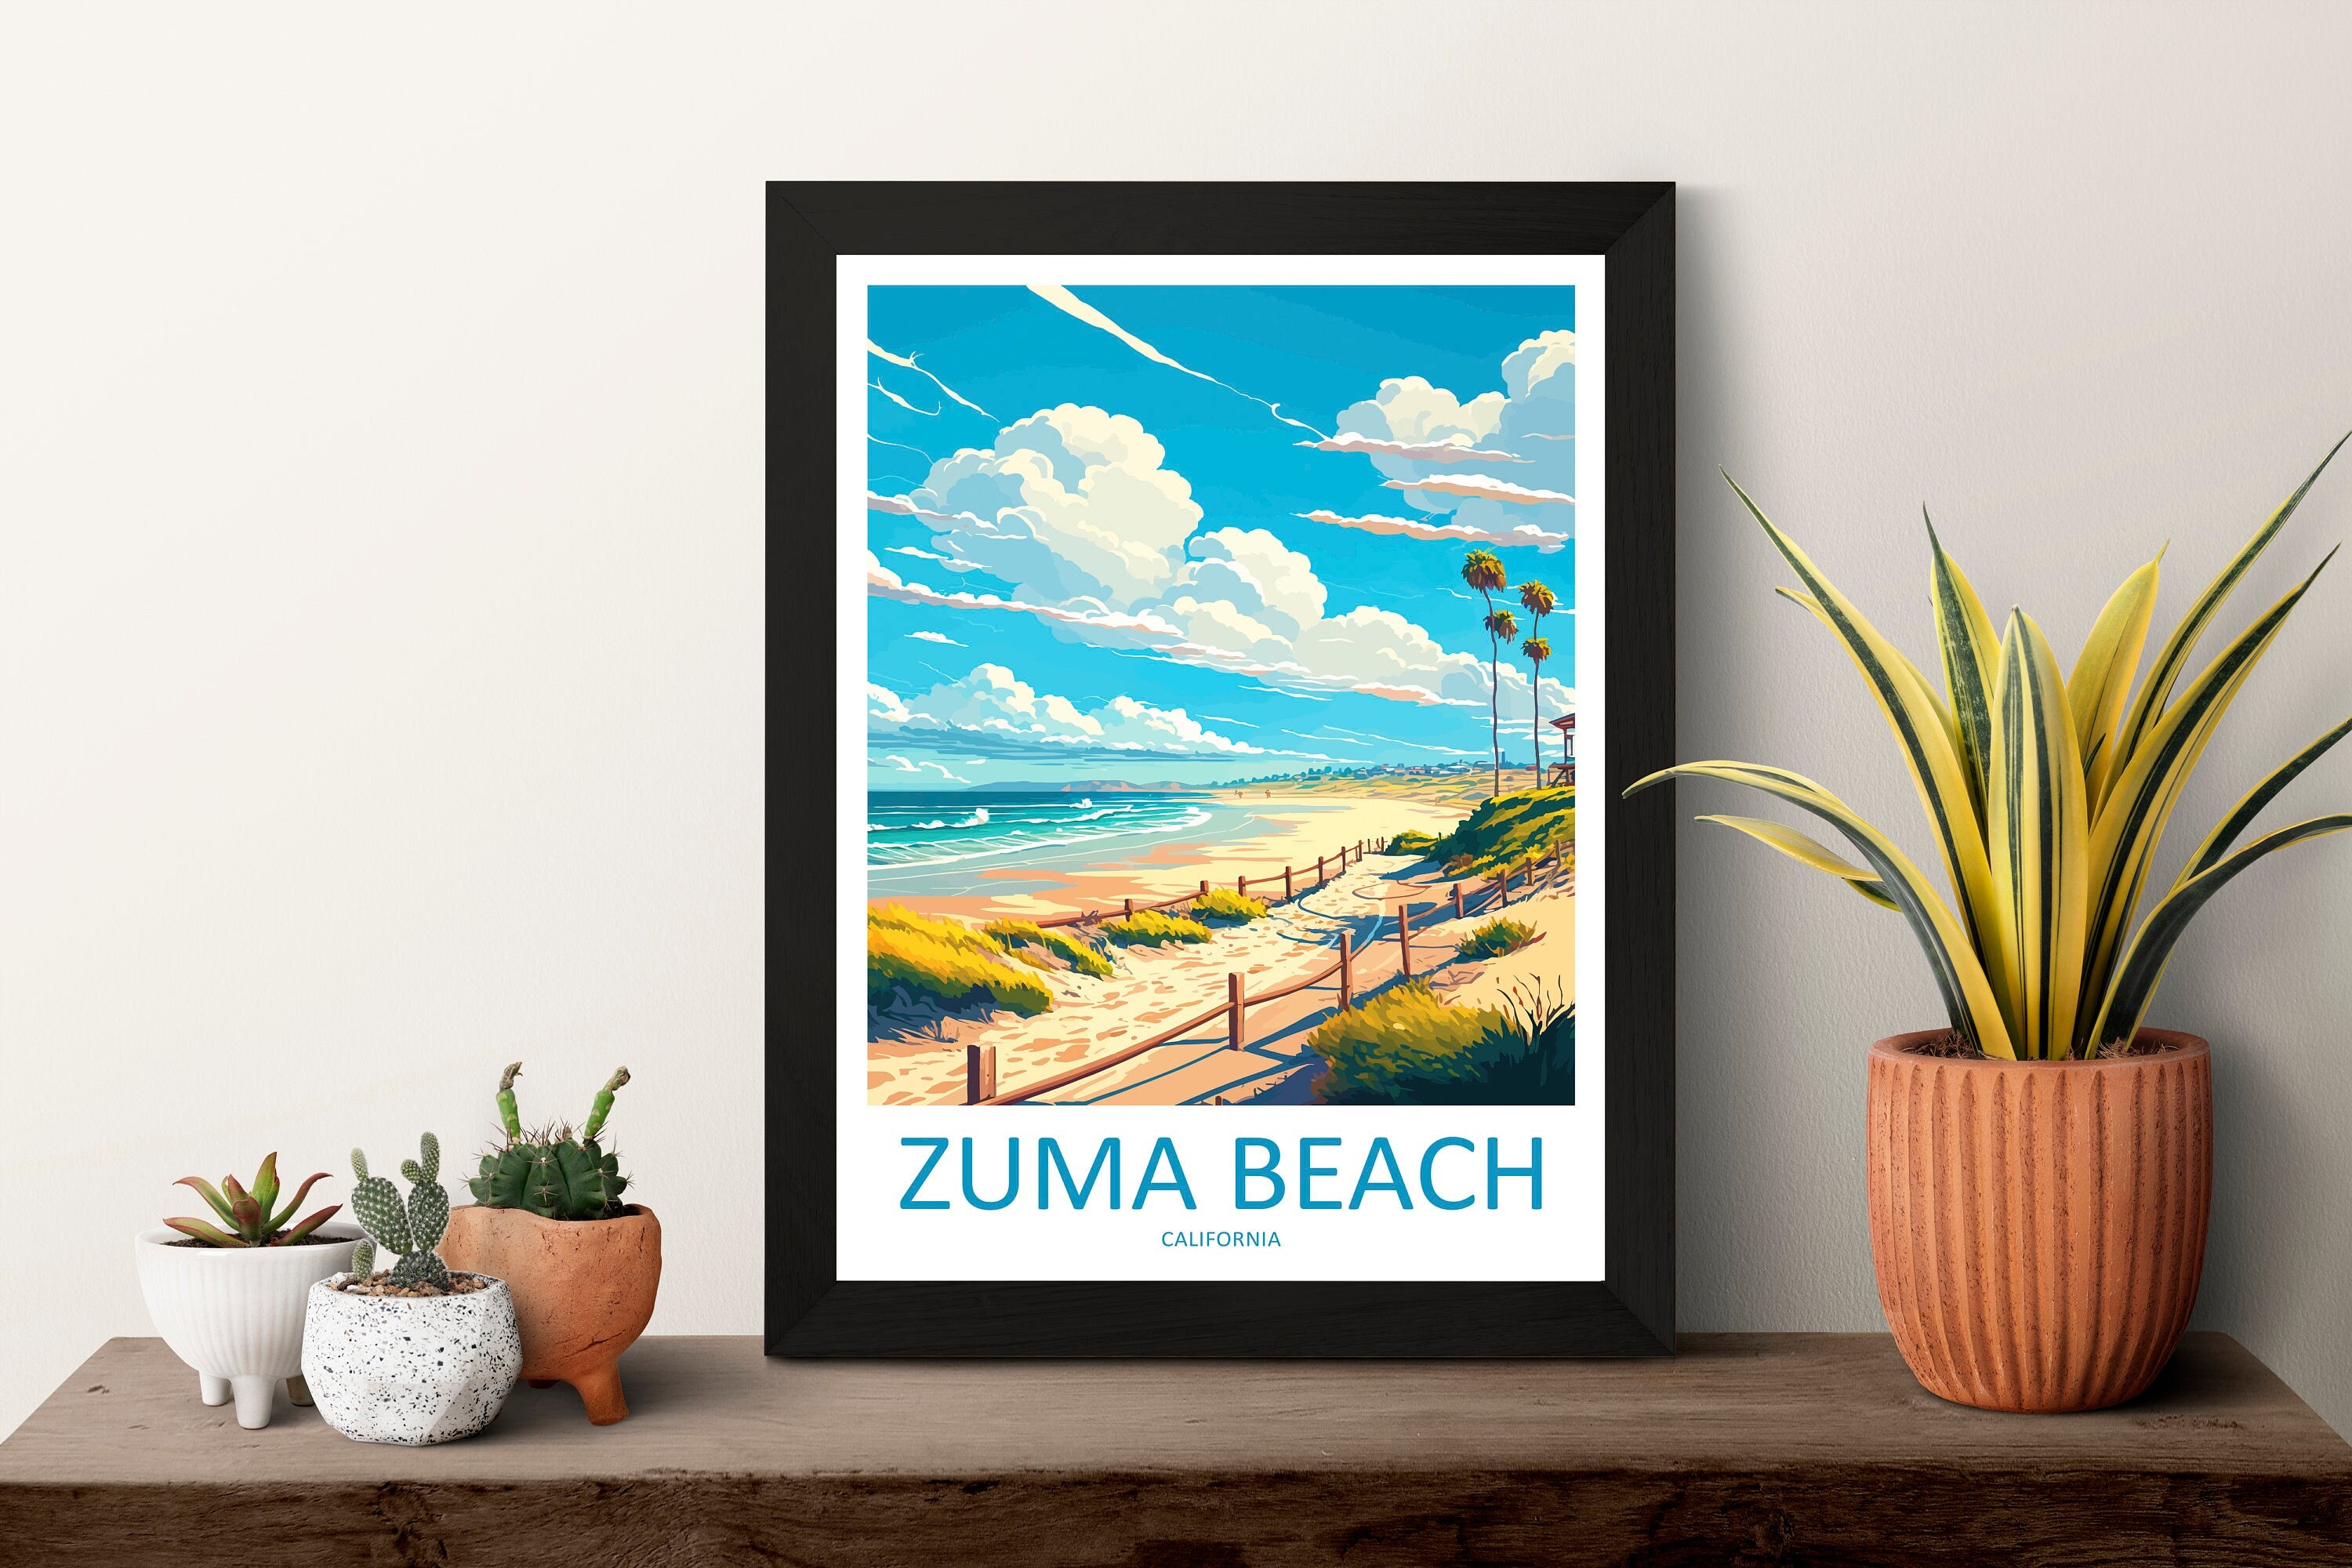 Zuma Beach Travel Print Wall Art Zuma Beach Wall Hanging Home Décor Zuma Beach Gift Art Lovers California Art Lover Gift Zuma Beach